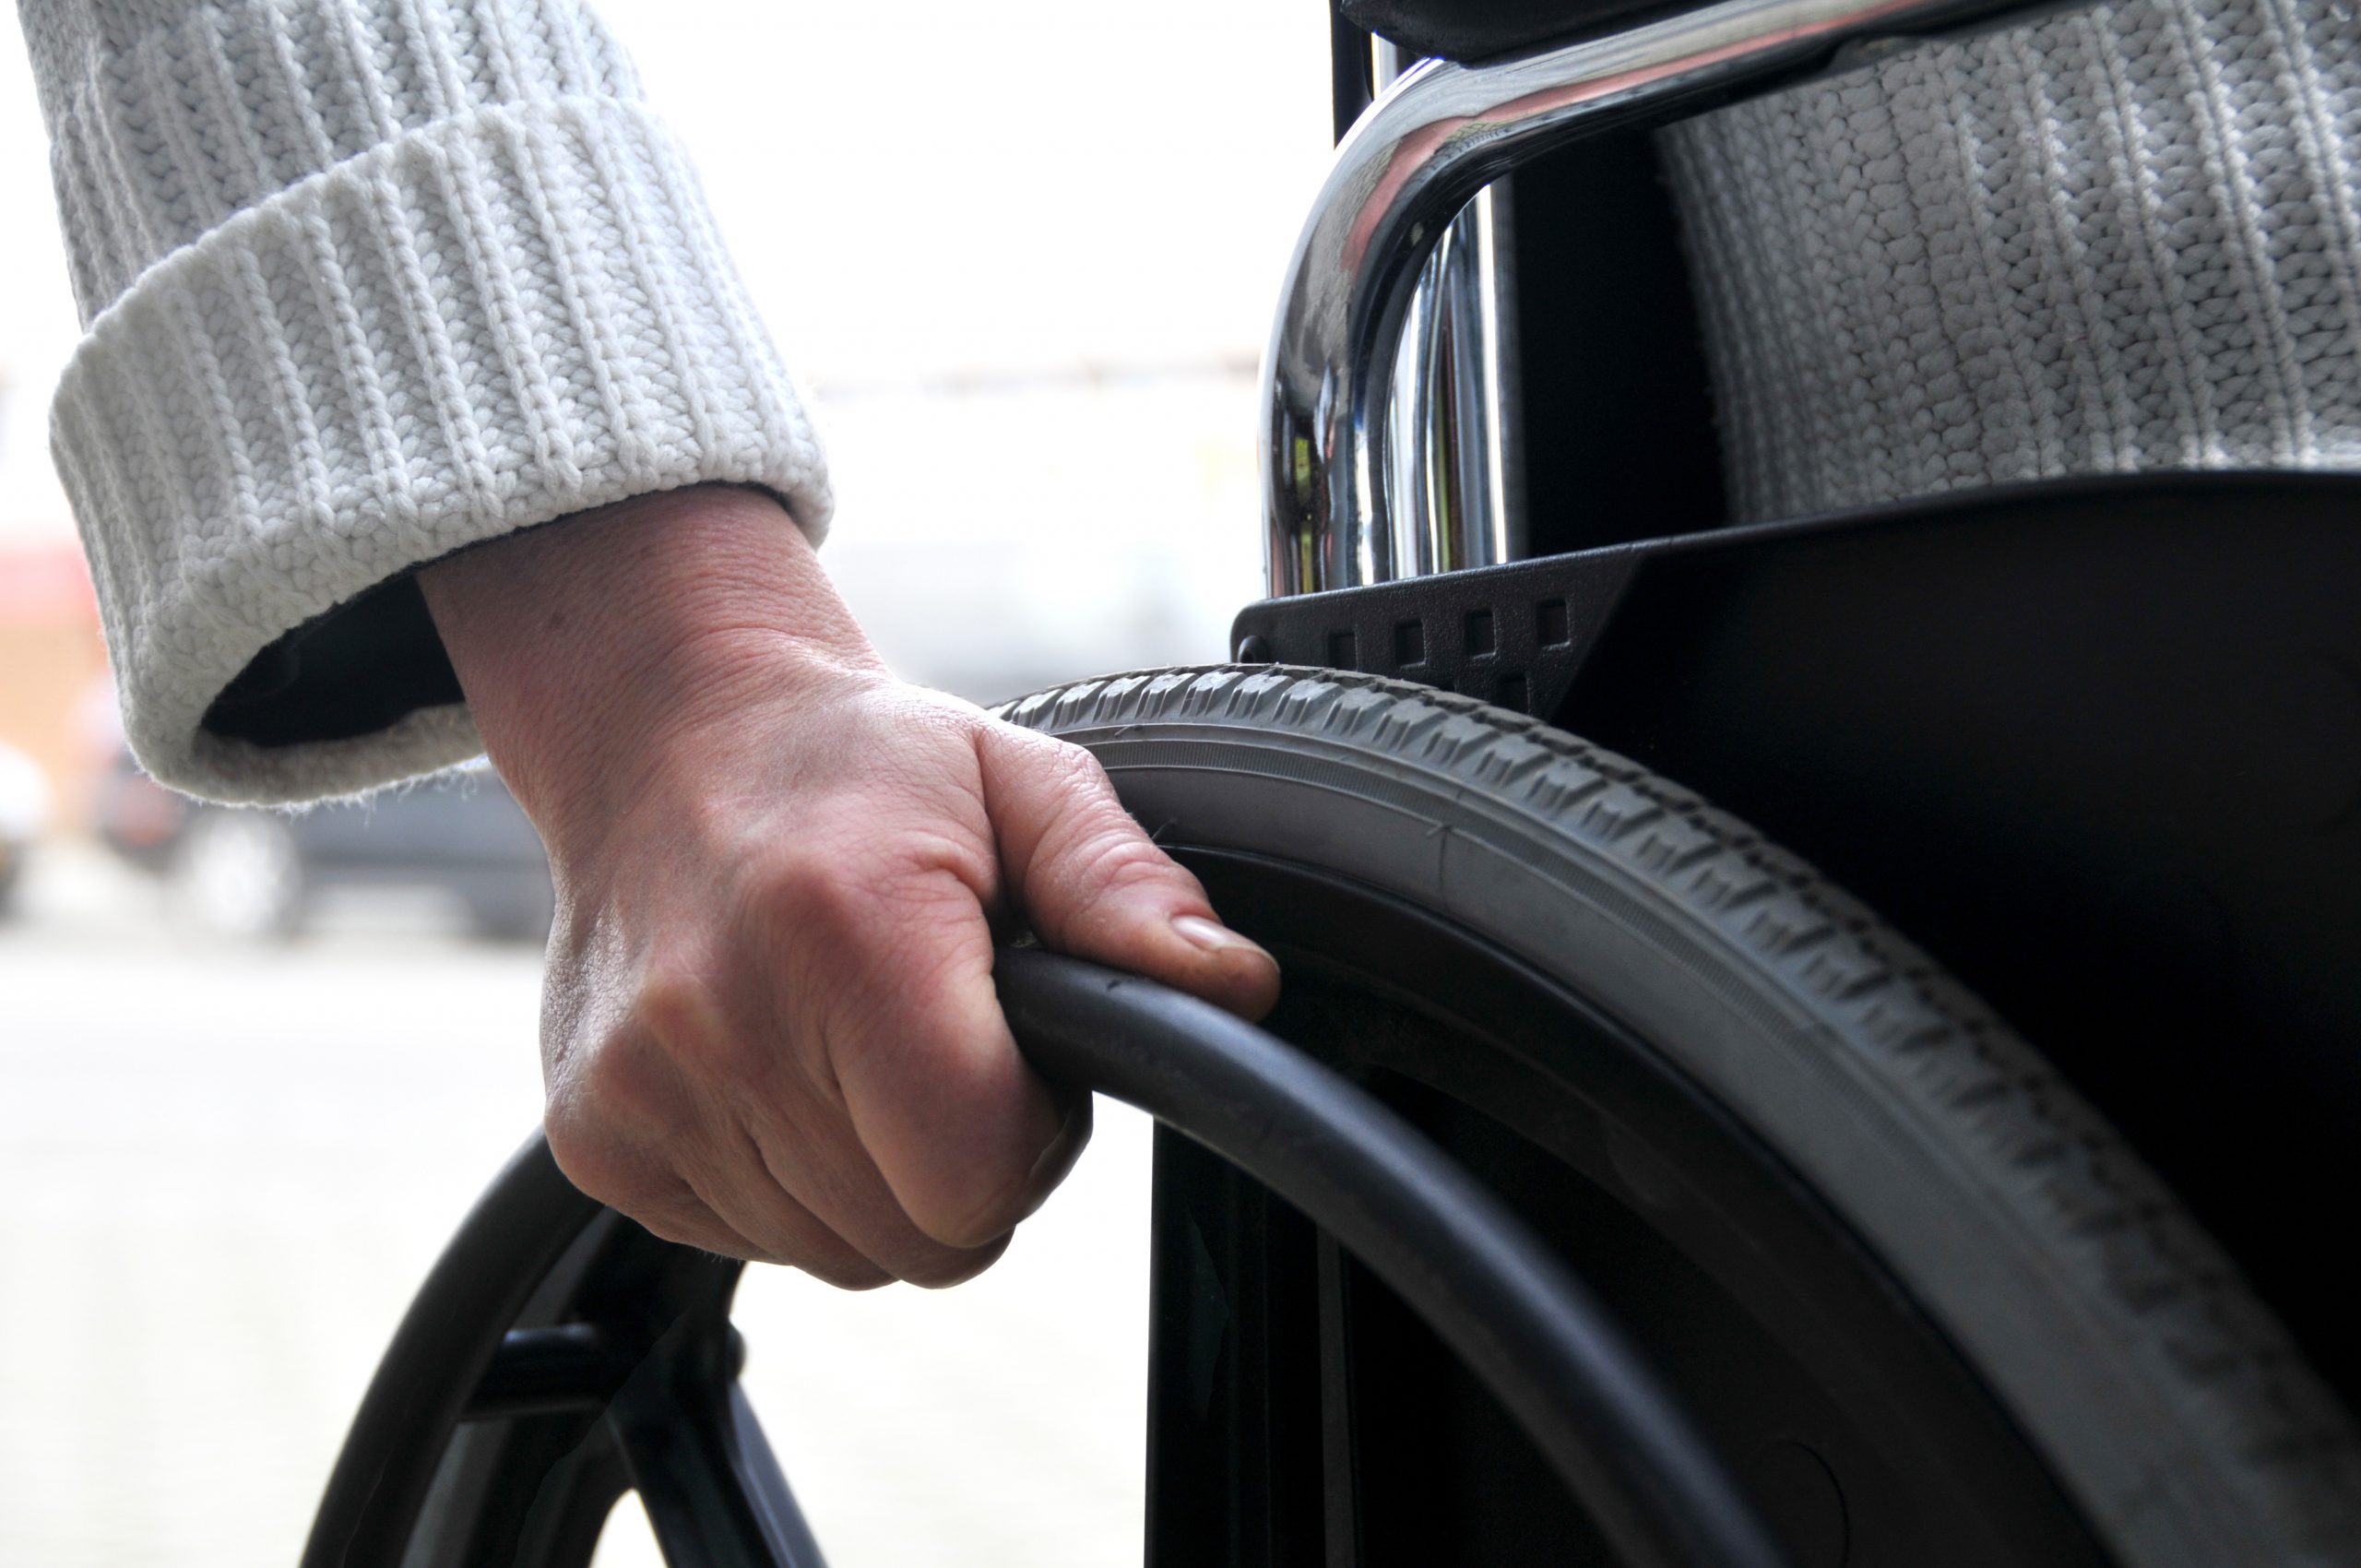 Nadchodzą zmiany dotyczące czasu pracy osób niepełnosprawnych